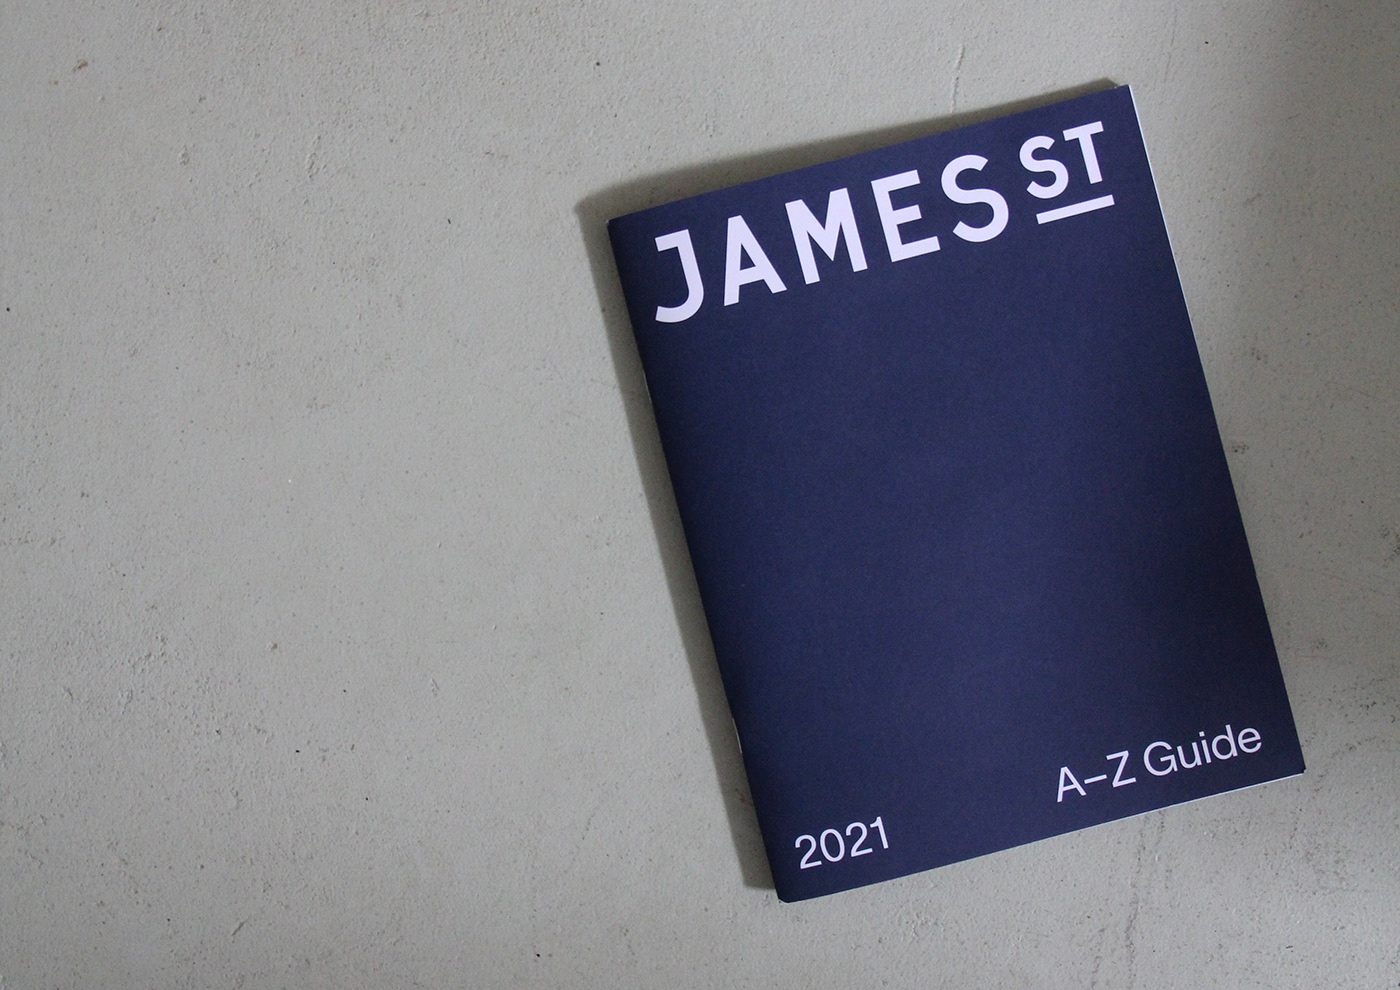 James St指南手册版式设计